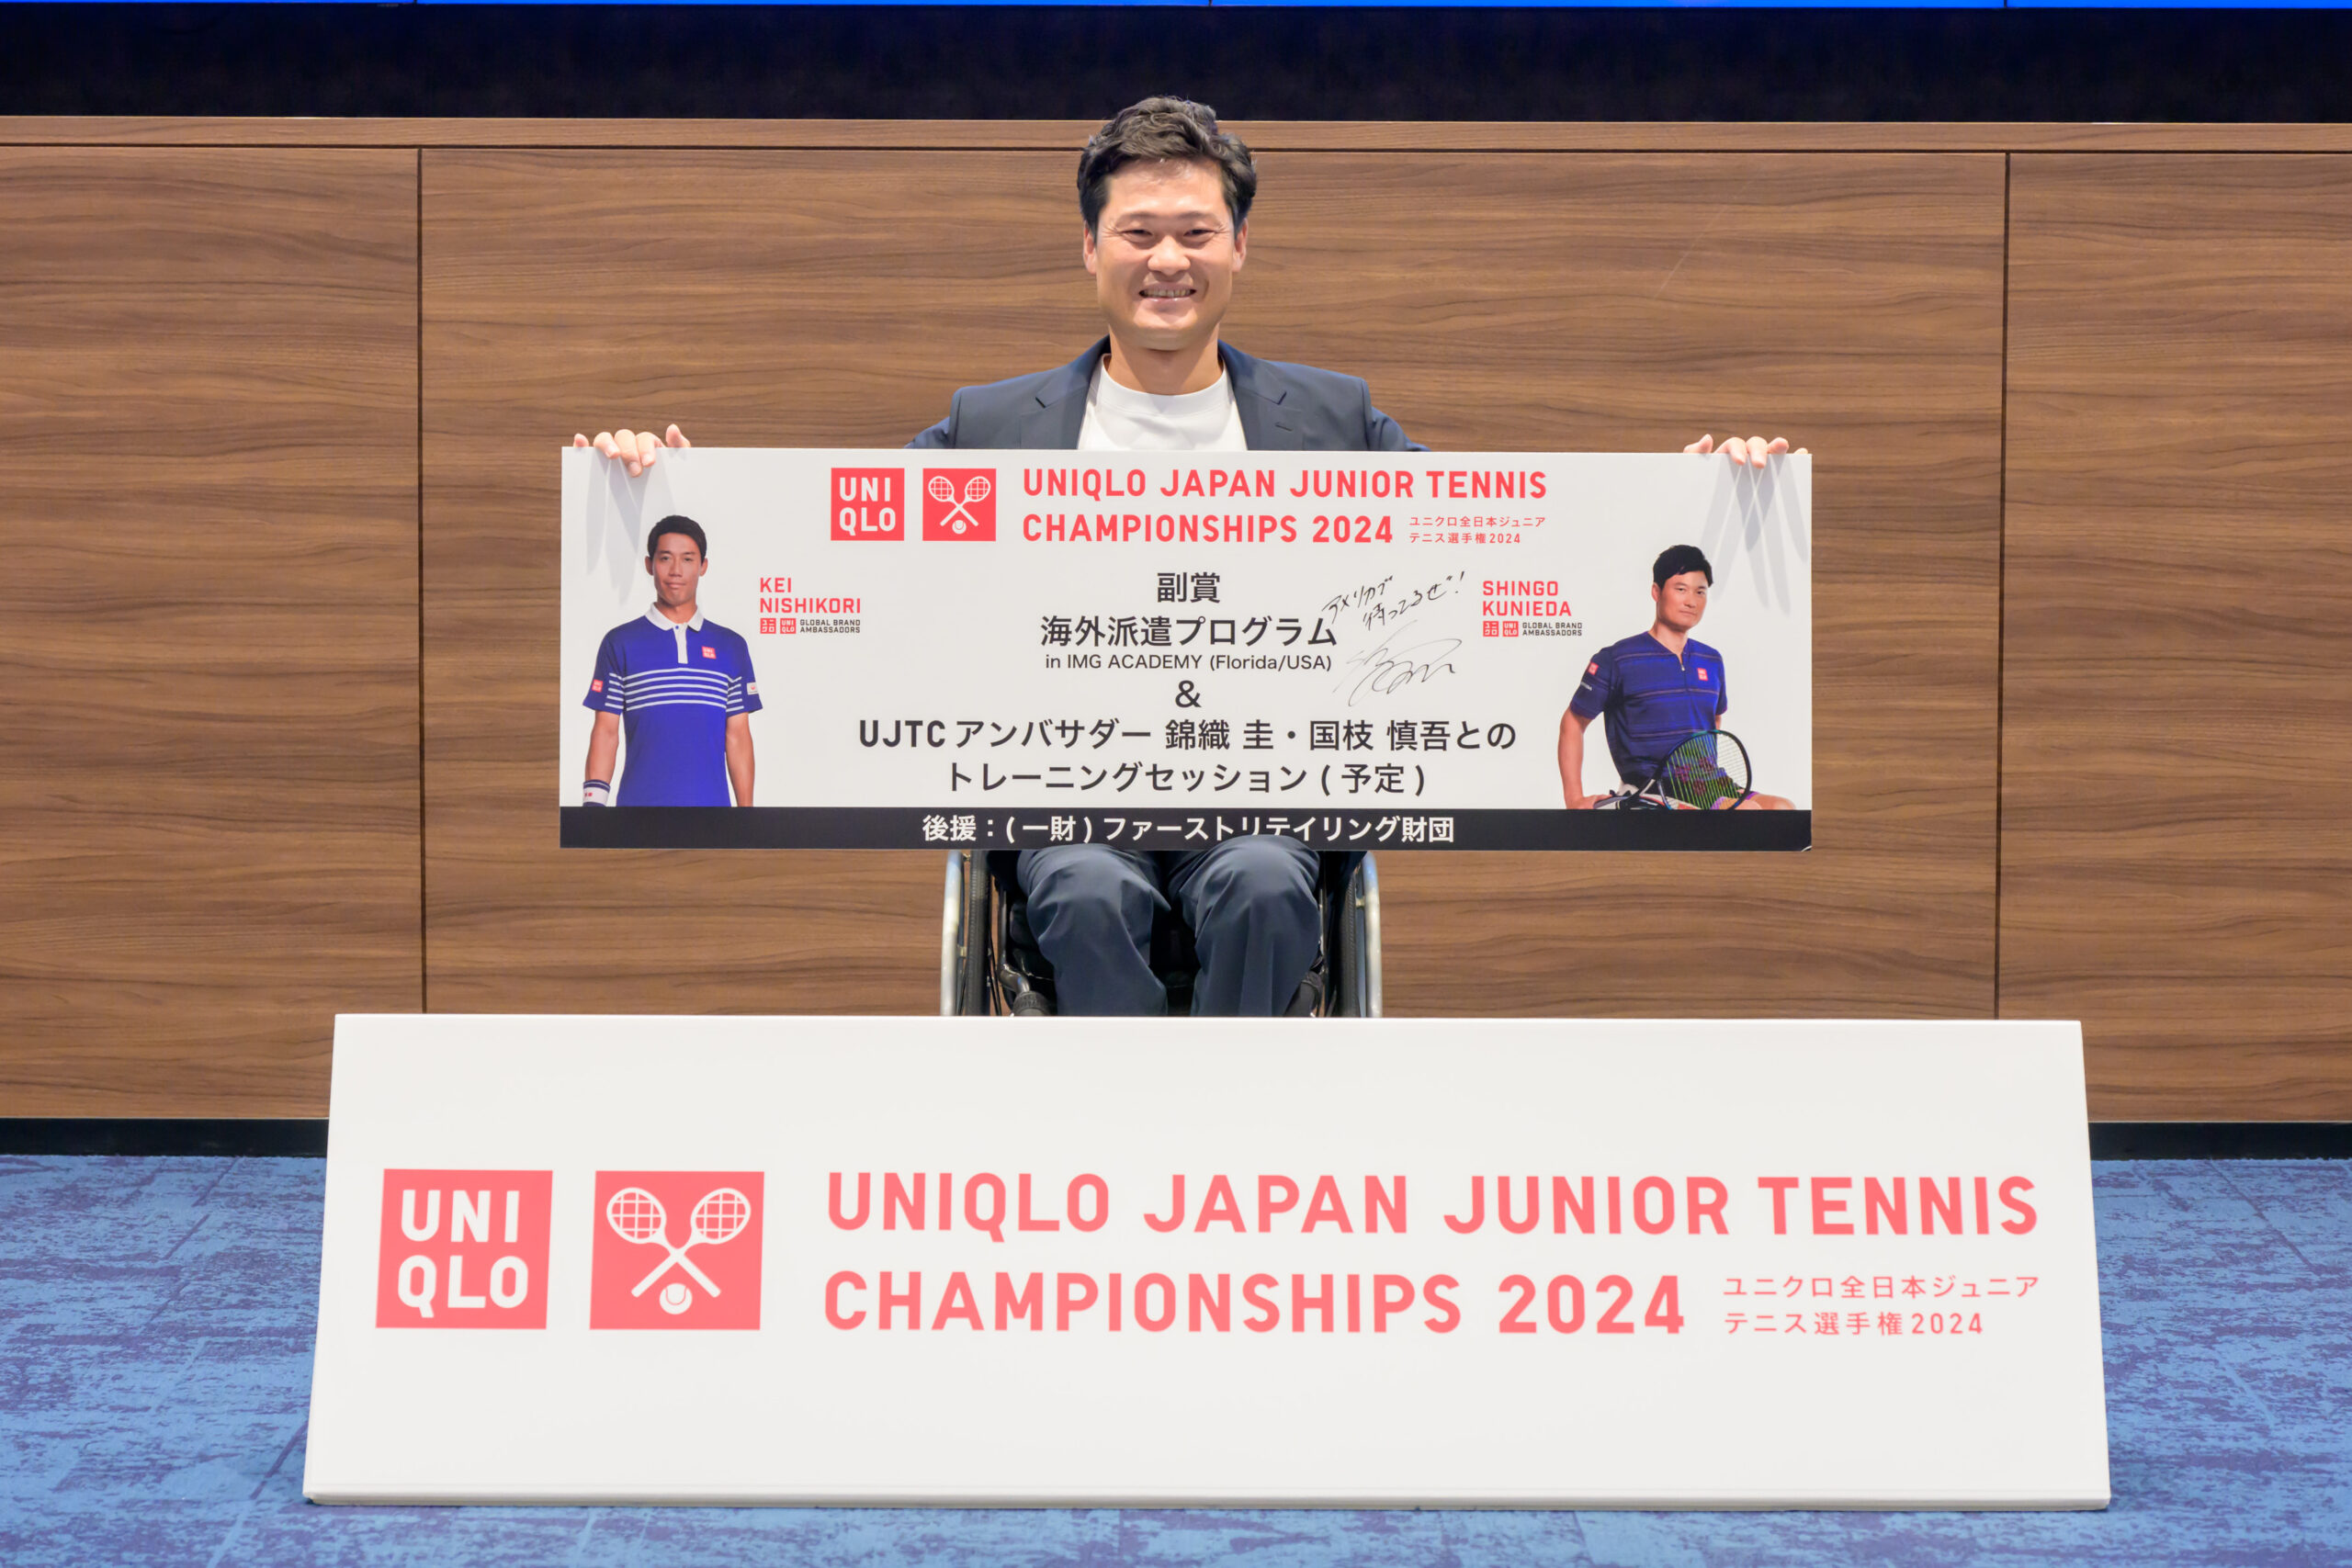   「ユニクロ全日本ジュニアテニス選手権2024」に車いすテニス部門が新設！　国枝慎吾氏大会アンバサダーに就任